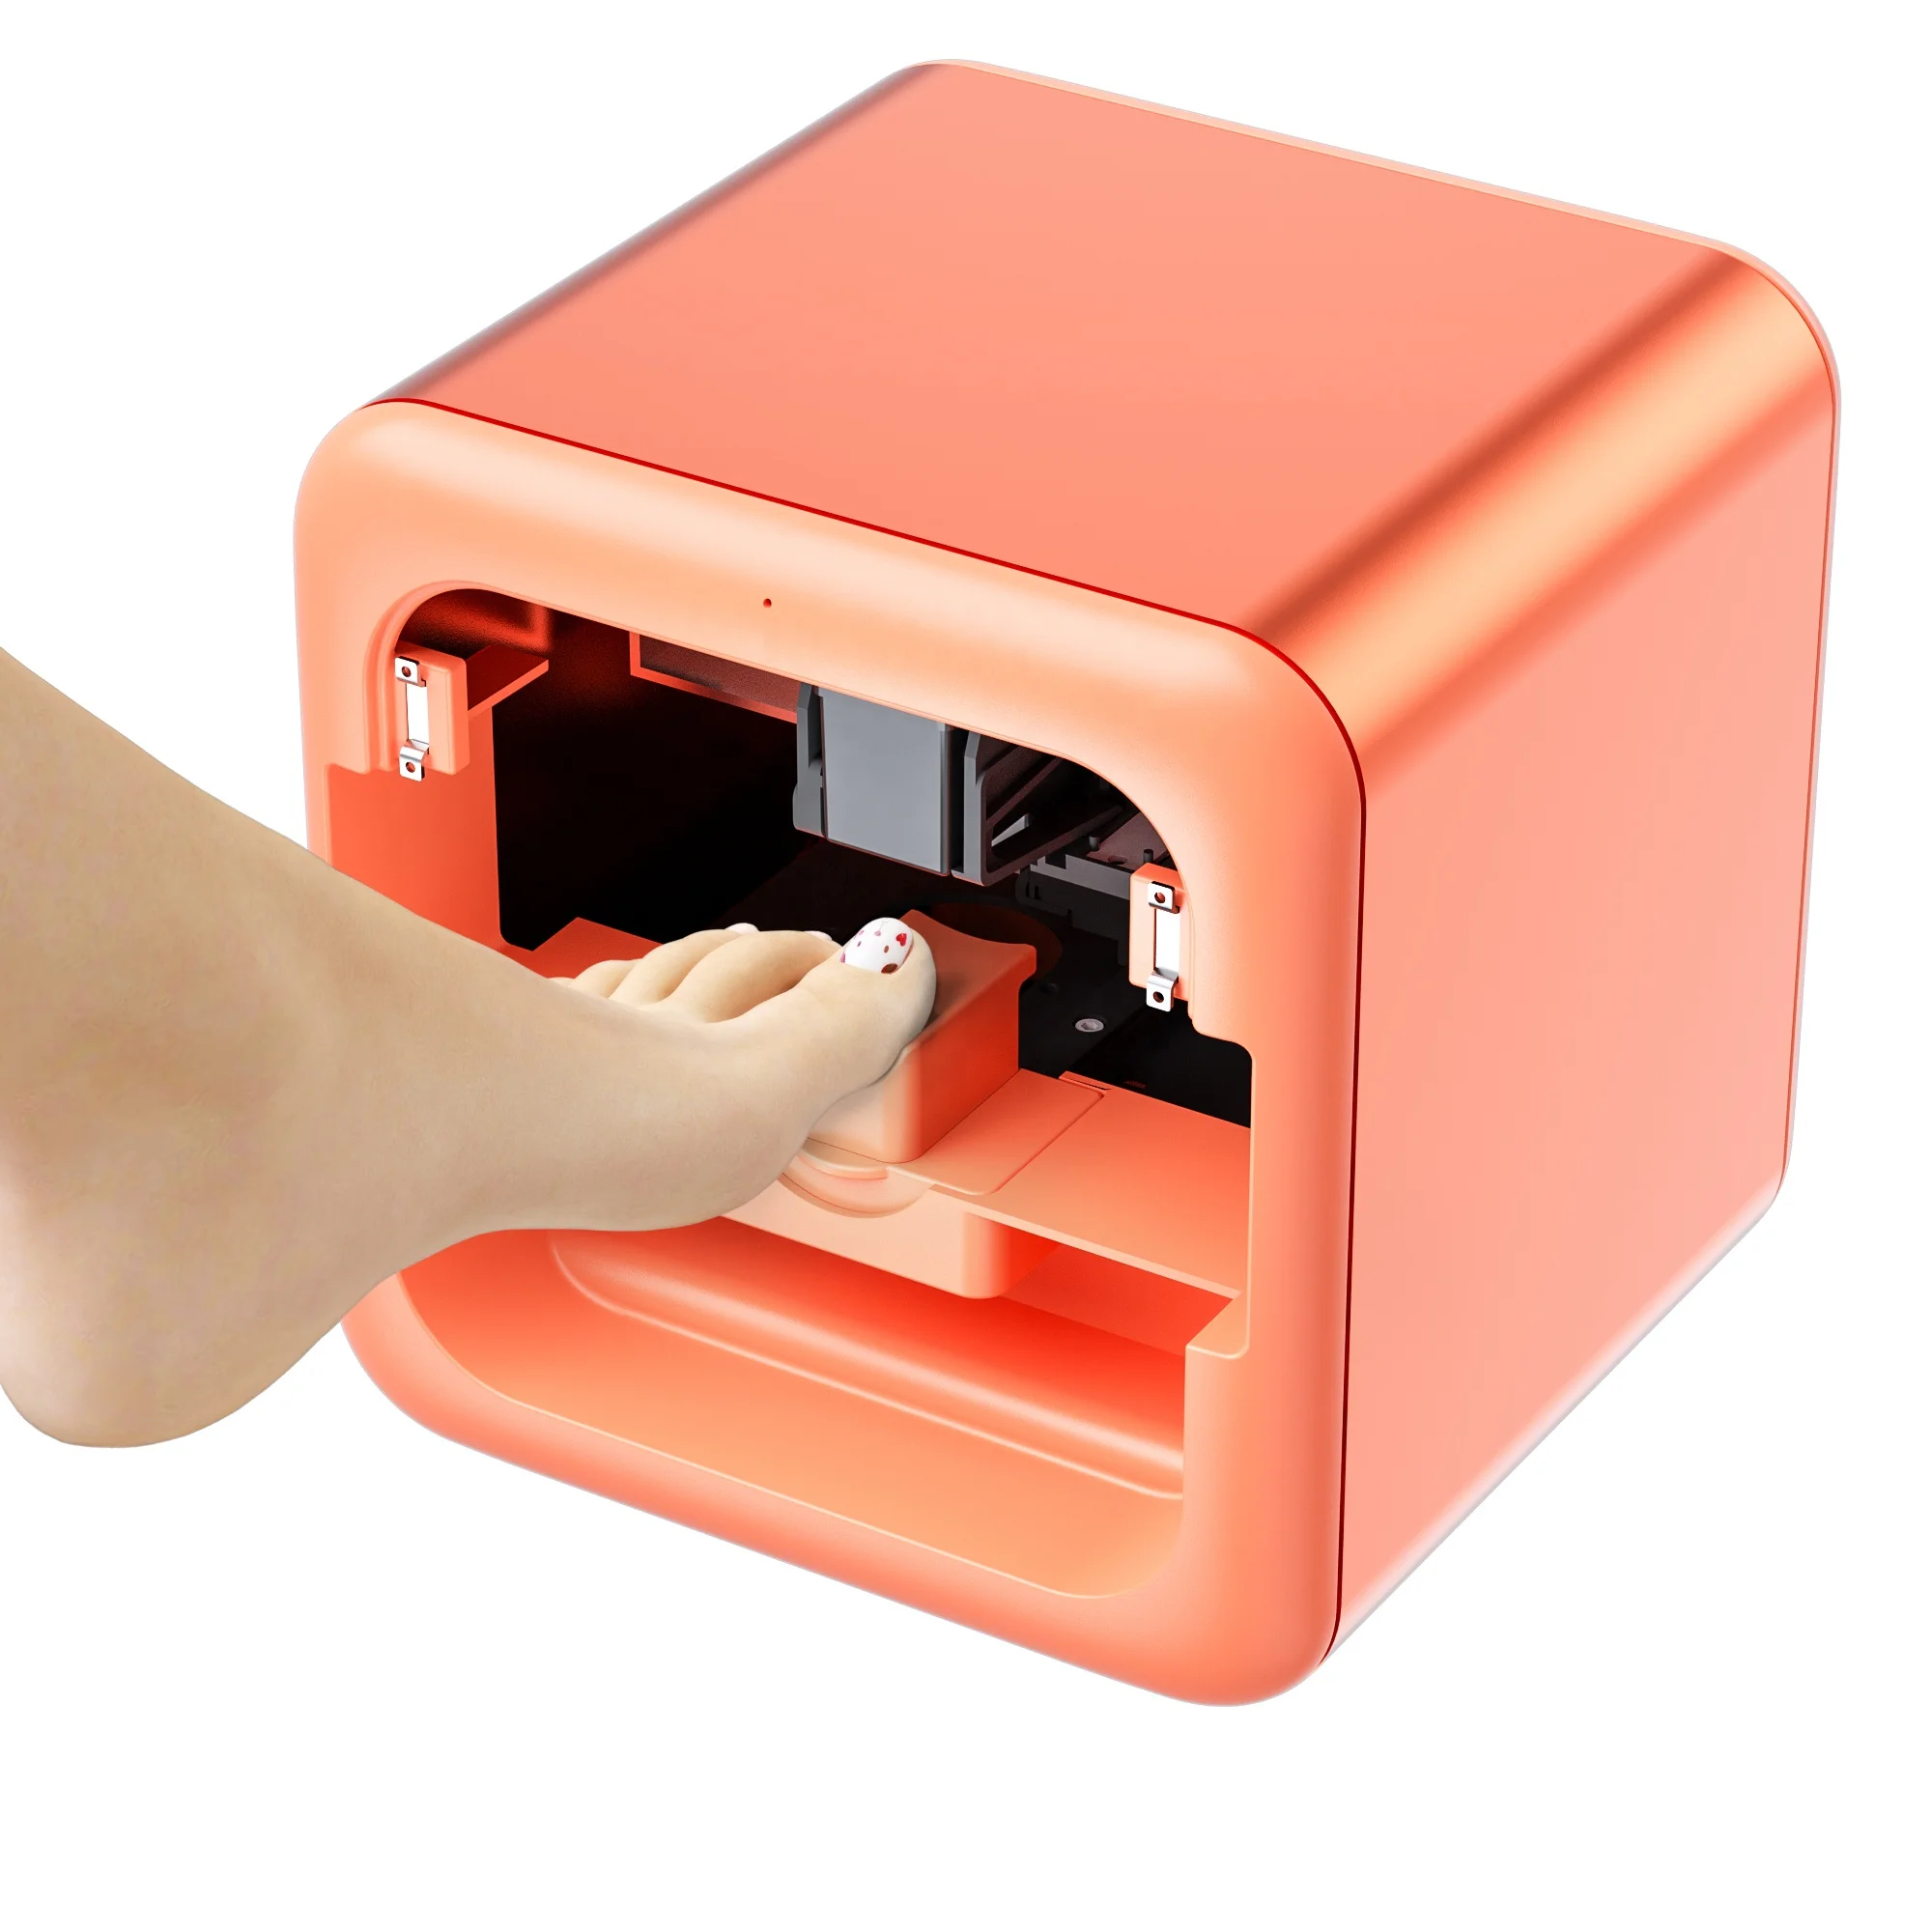 Burro Especialmente innovación Wholesale Impresora 3d profesional para uñas, máquina de impresión de uñas  de dedos y dedos de los pies, China From m.alibaba.com